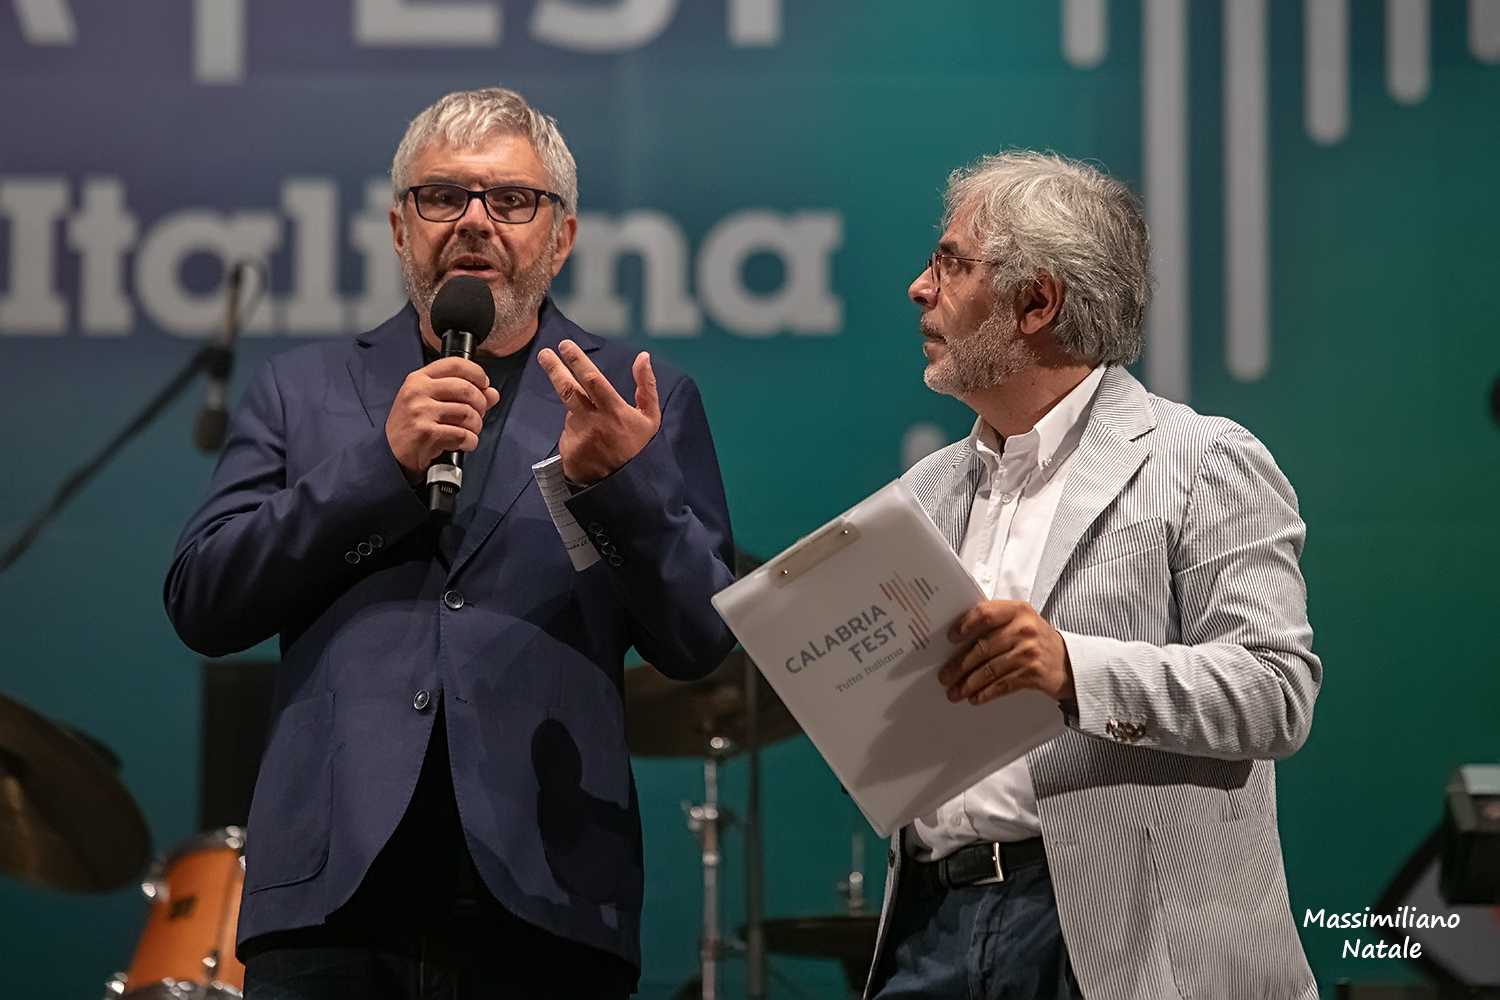 Giovanni Arichetta e i Carboidrati sono i primi finalisti del “Calabria Fest Tutta Italiana”